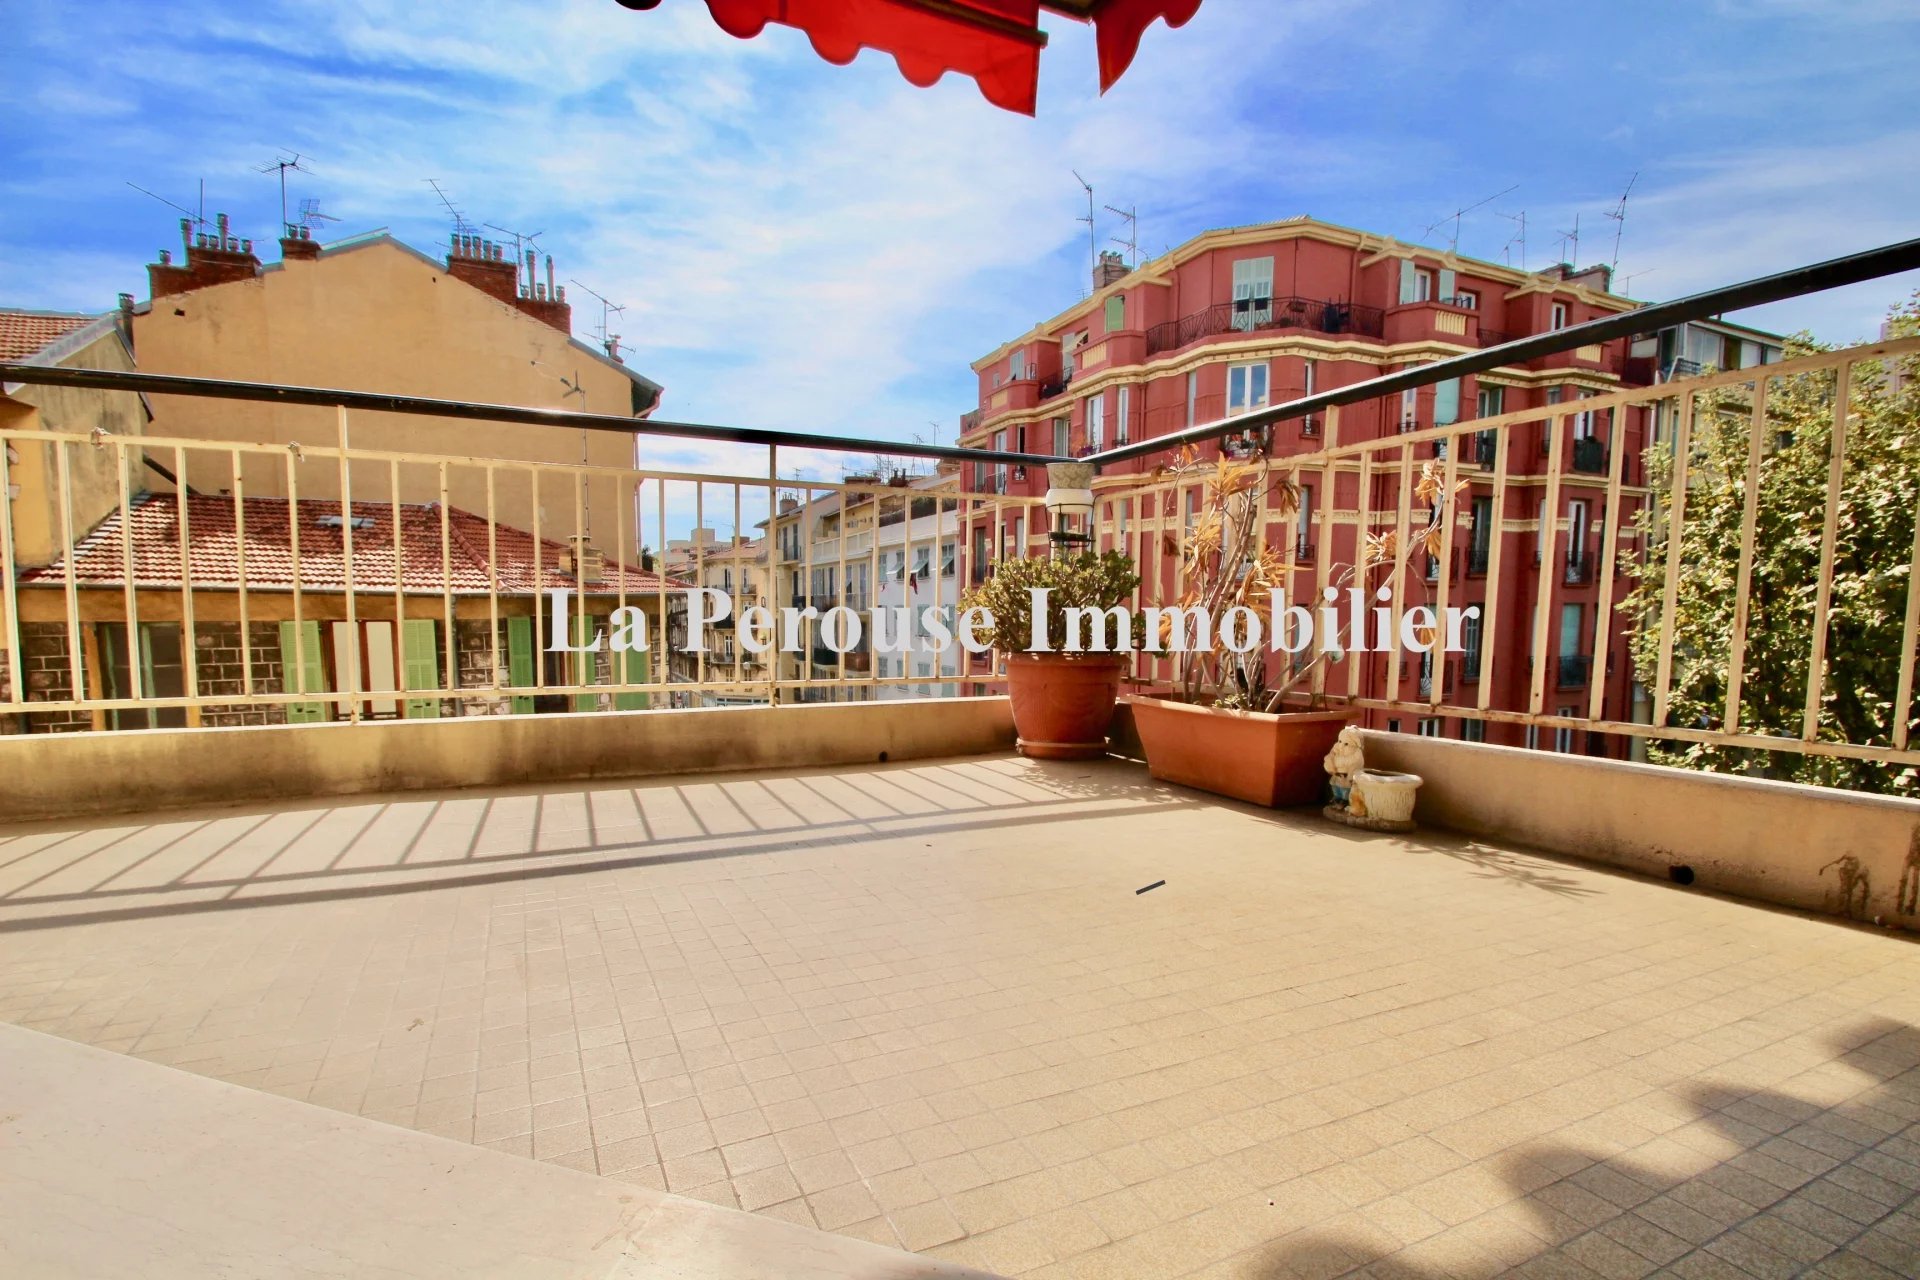 Vente Appartement 76m² 3 Pièces à Nice (06300) - La Perouse Immobilier